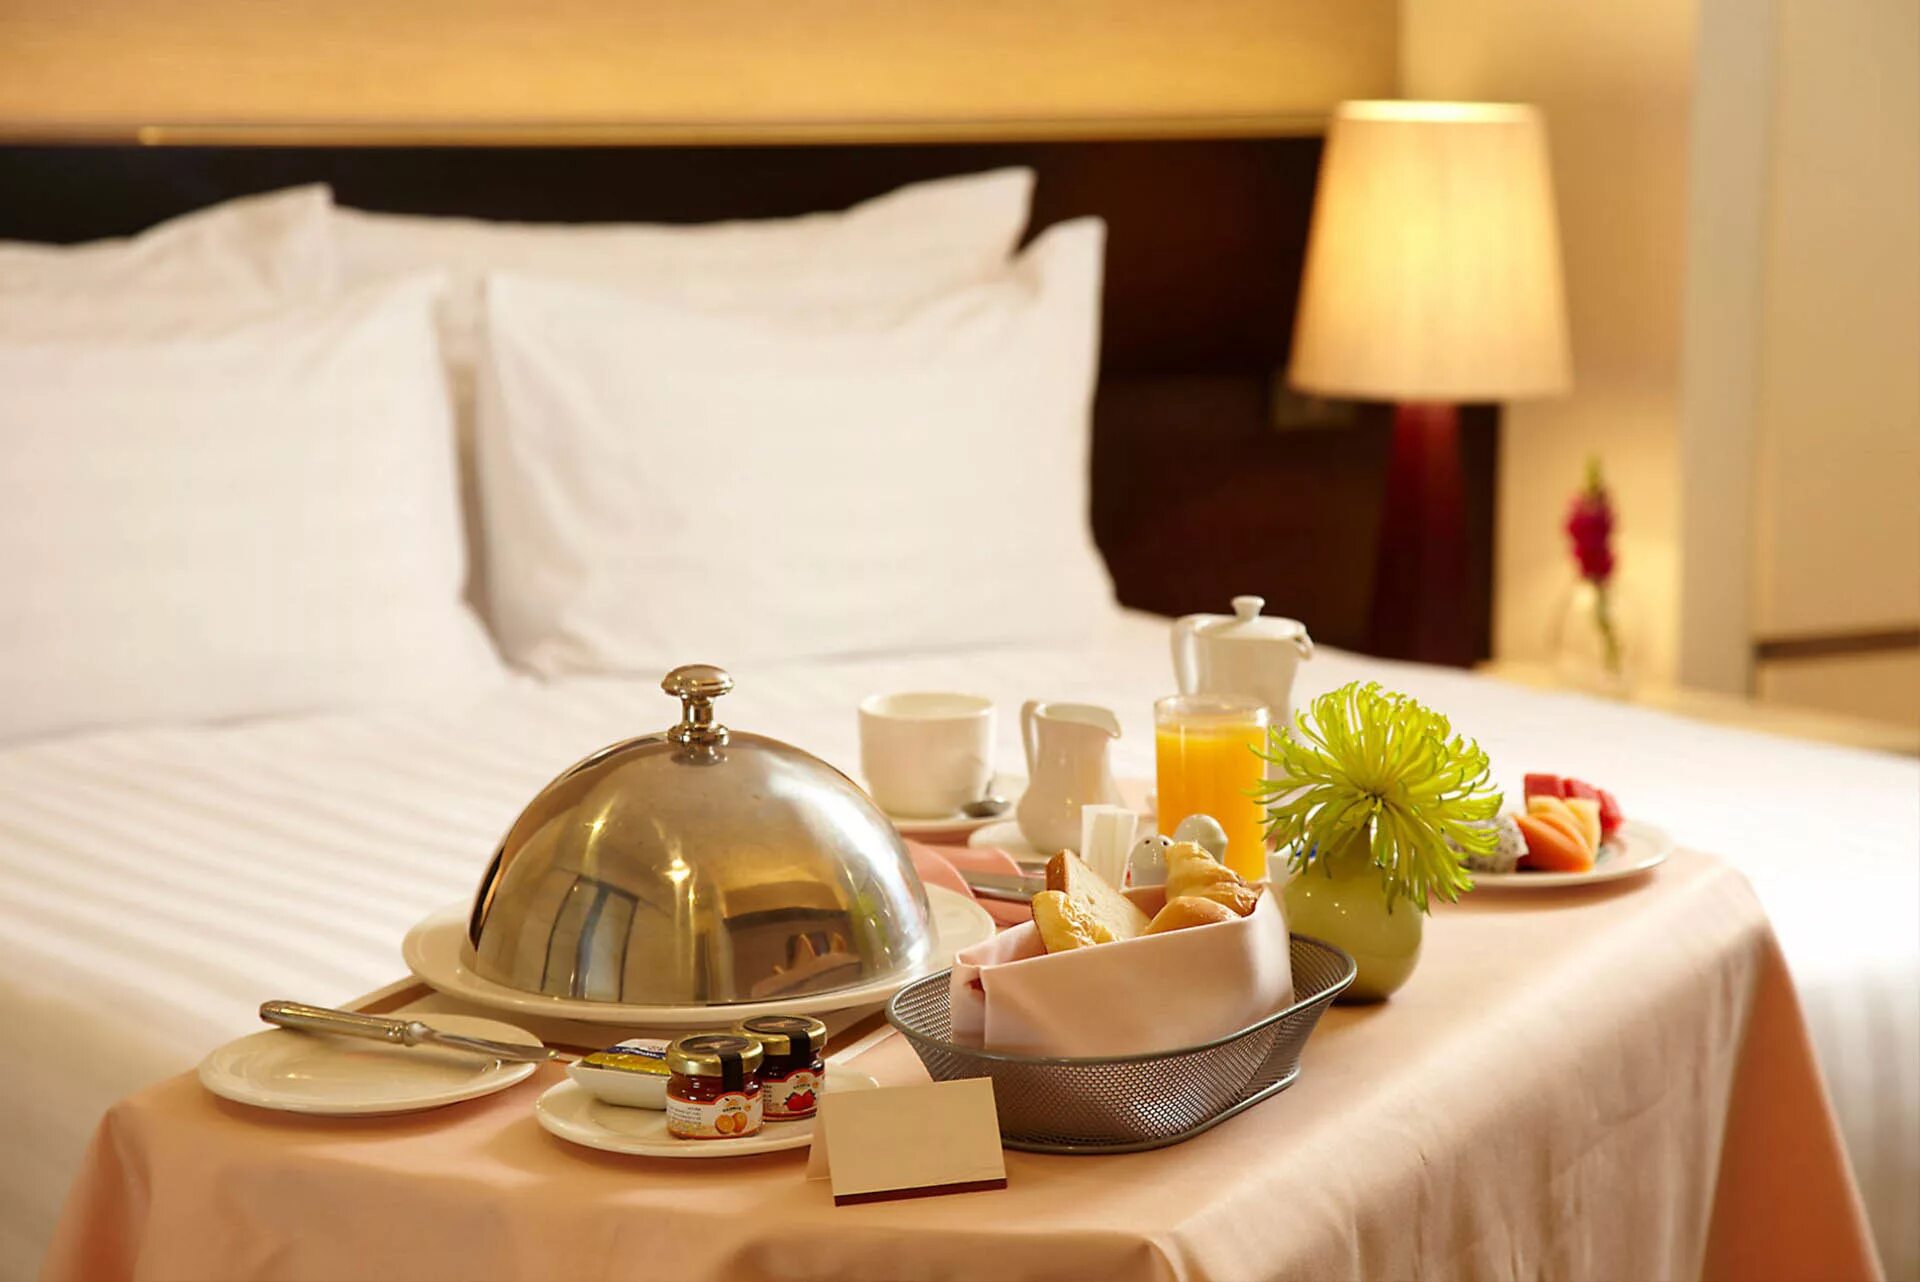 Отель отзывы питание. Рум сервис в гостинице. Завтрак в гостинице. Завтрак в номер в гостинице. Сервировка стола номер отель.